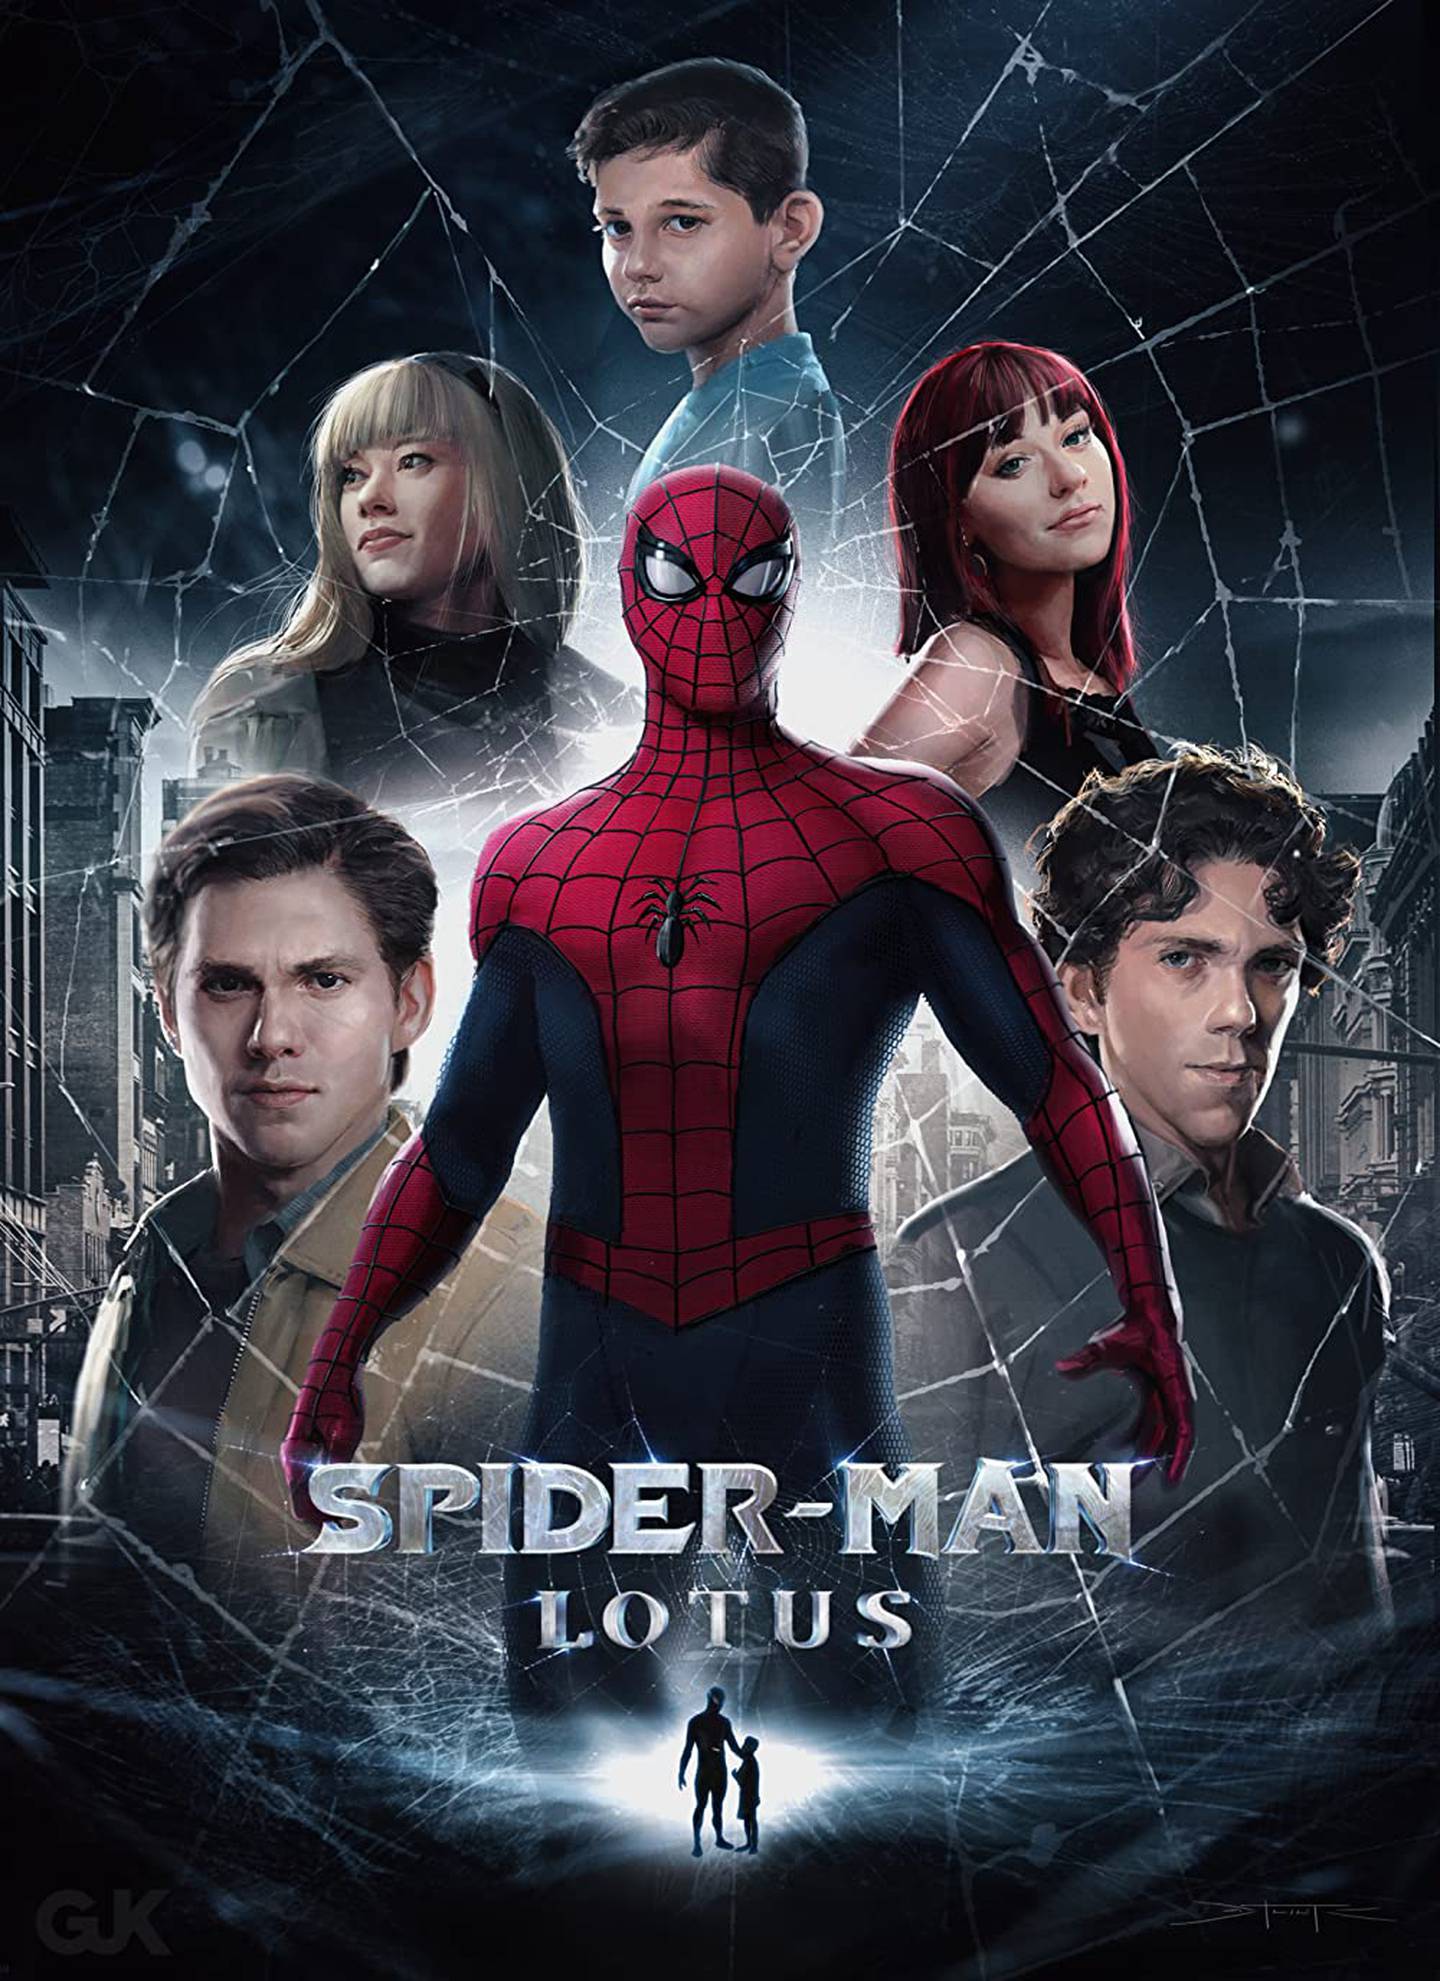 Wayne Warden encarna a Peter Parker en el fan film Spider-Man: Lotus, empañado por antiguos mensajes de racismo y homofobia del actor.